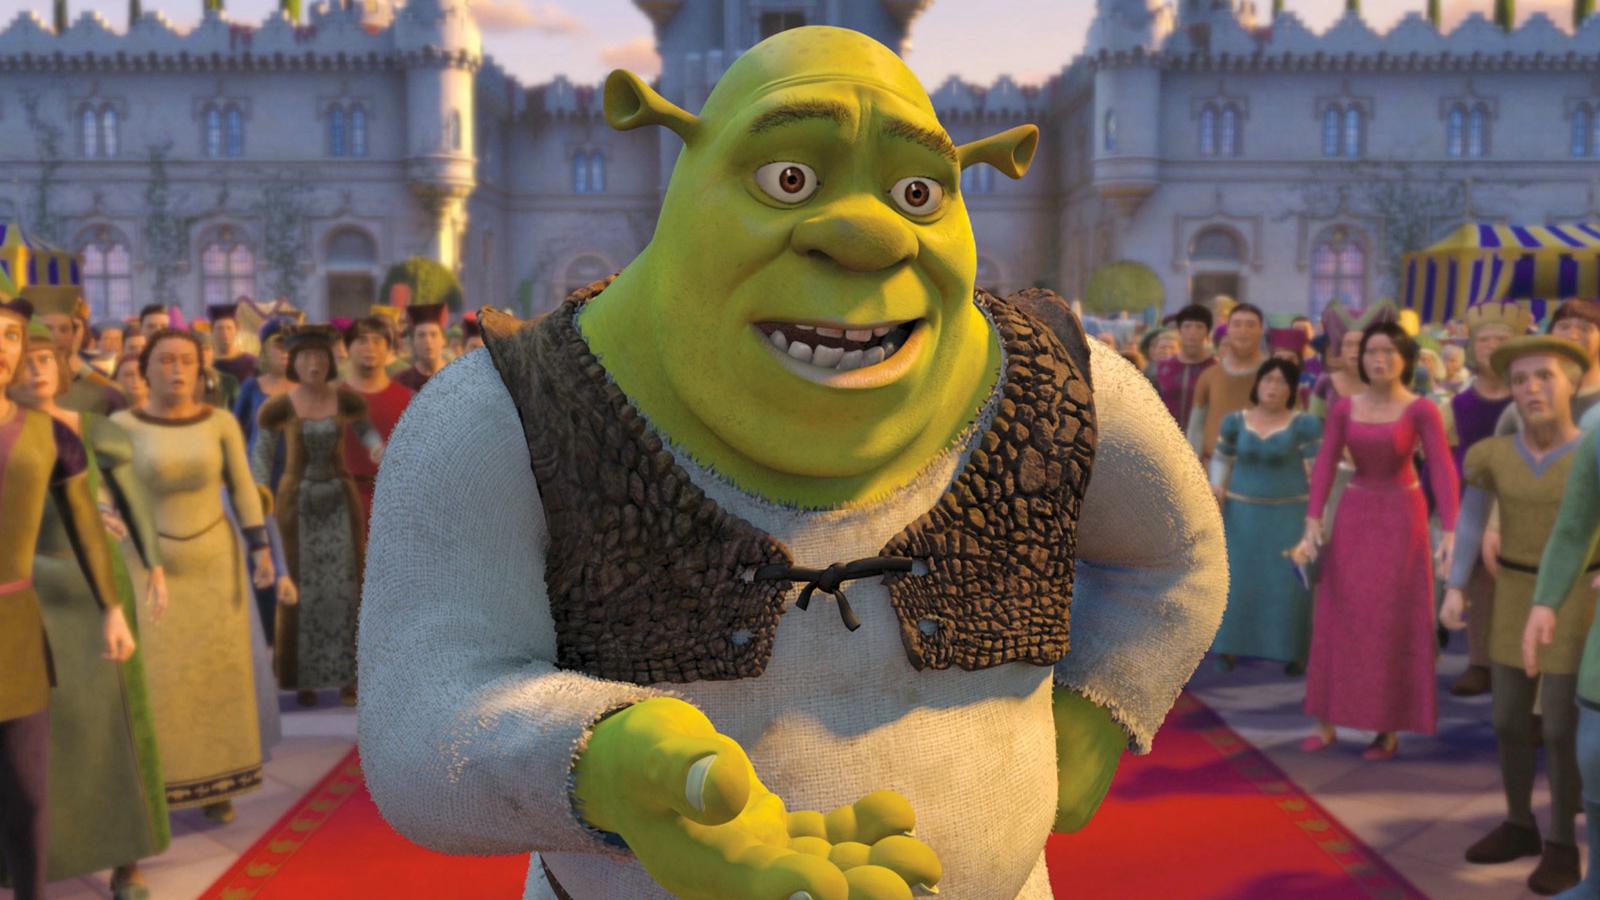 Shrek presentándose con los padres de Fiona cuando llegó a su castillo junto a ella y Burro